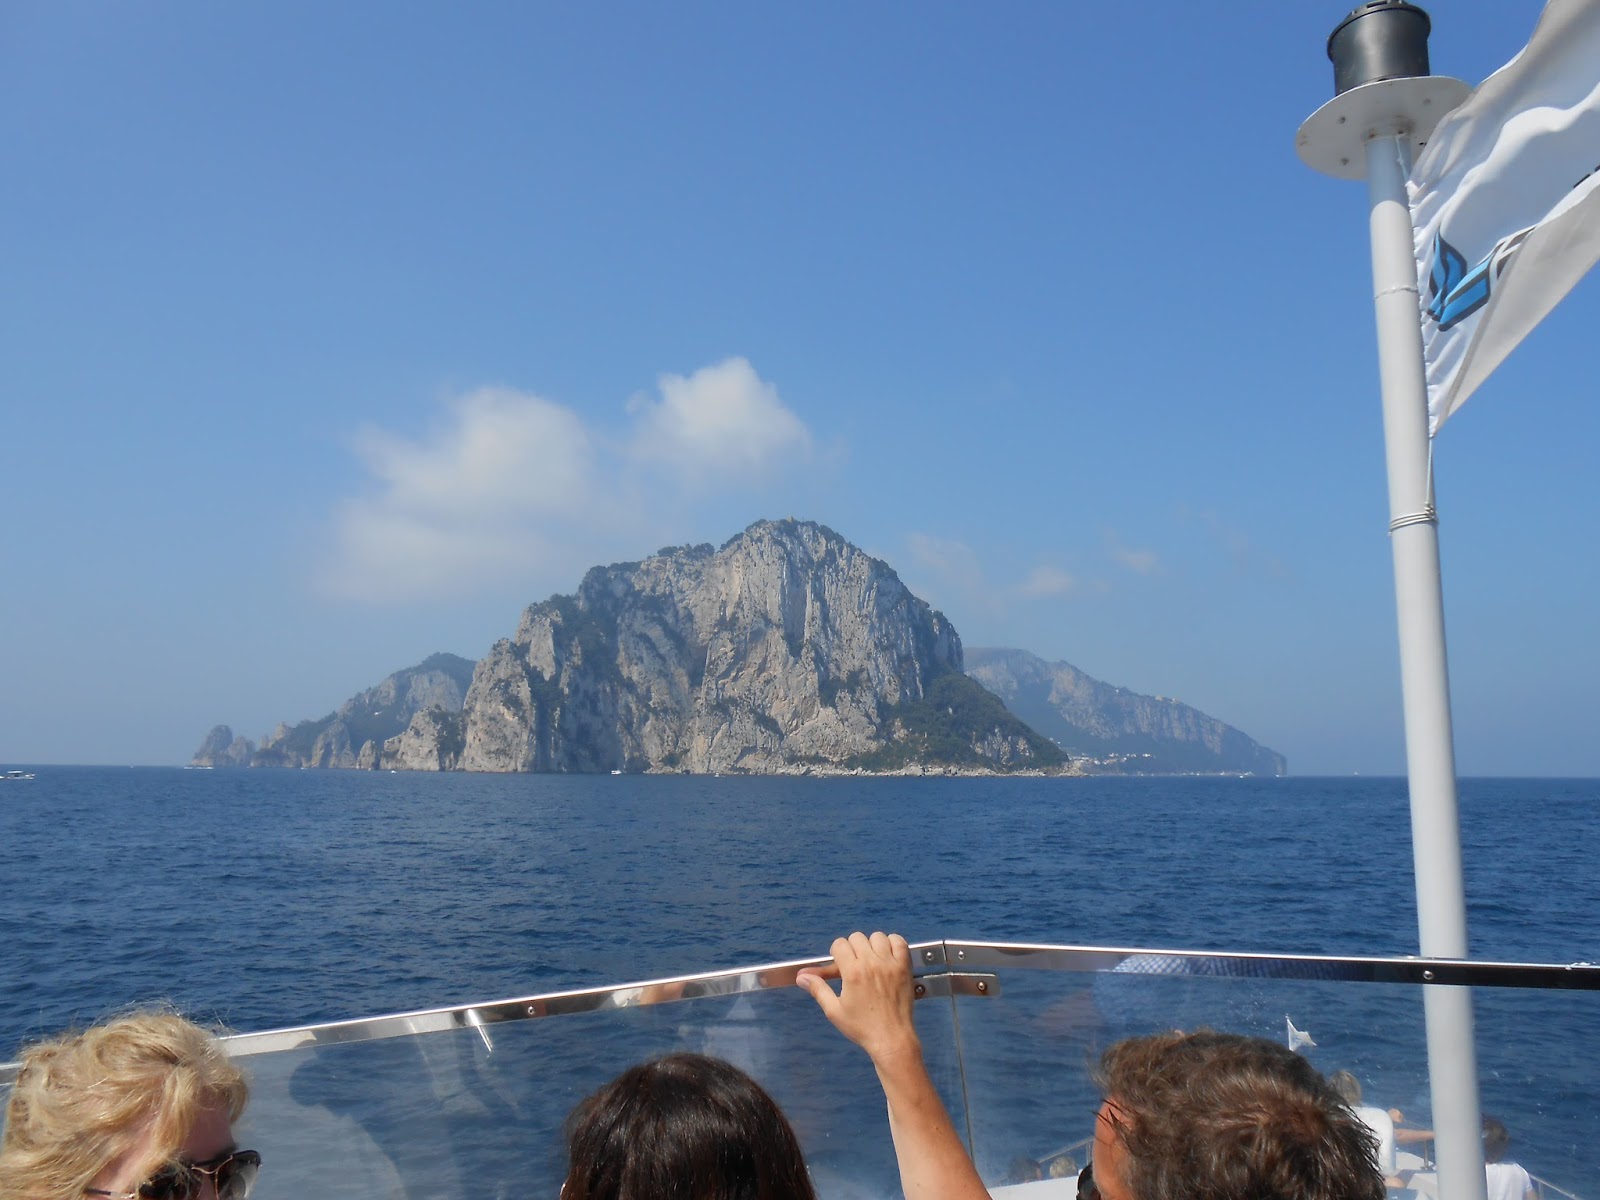 Come si è formato il manto verde dell'isola di Capri? The green mantle of Capri